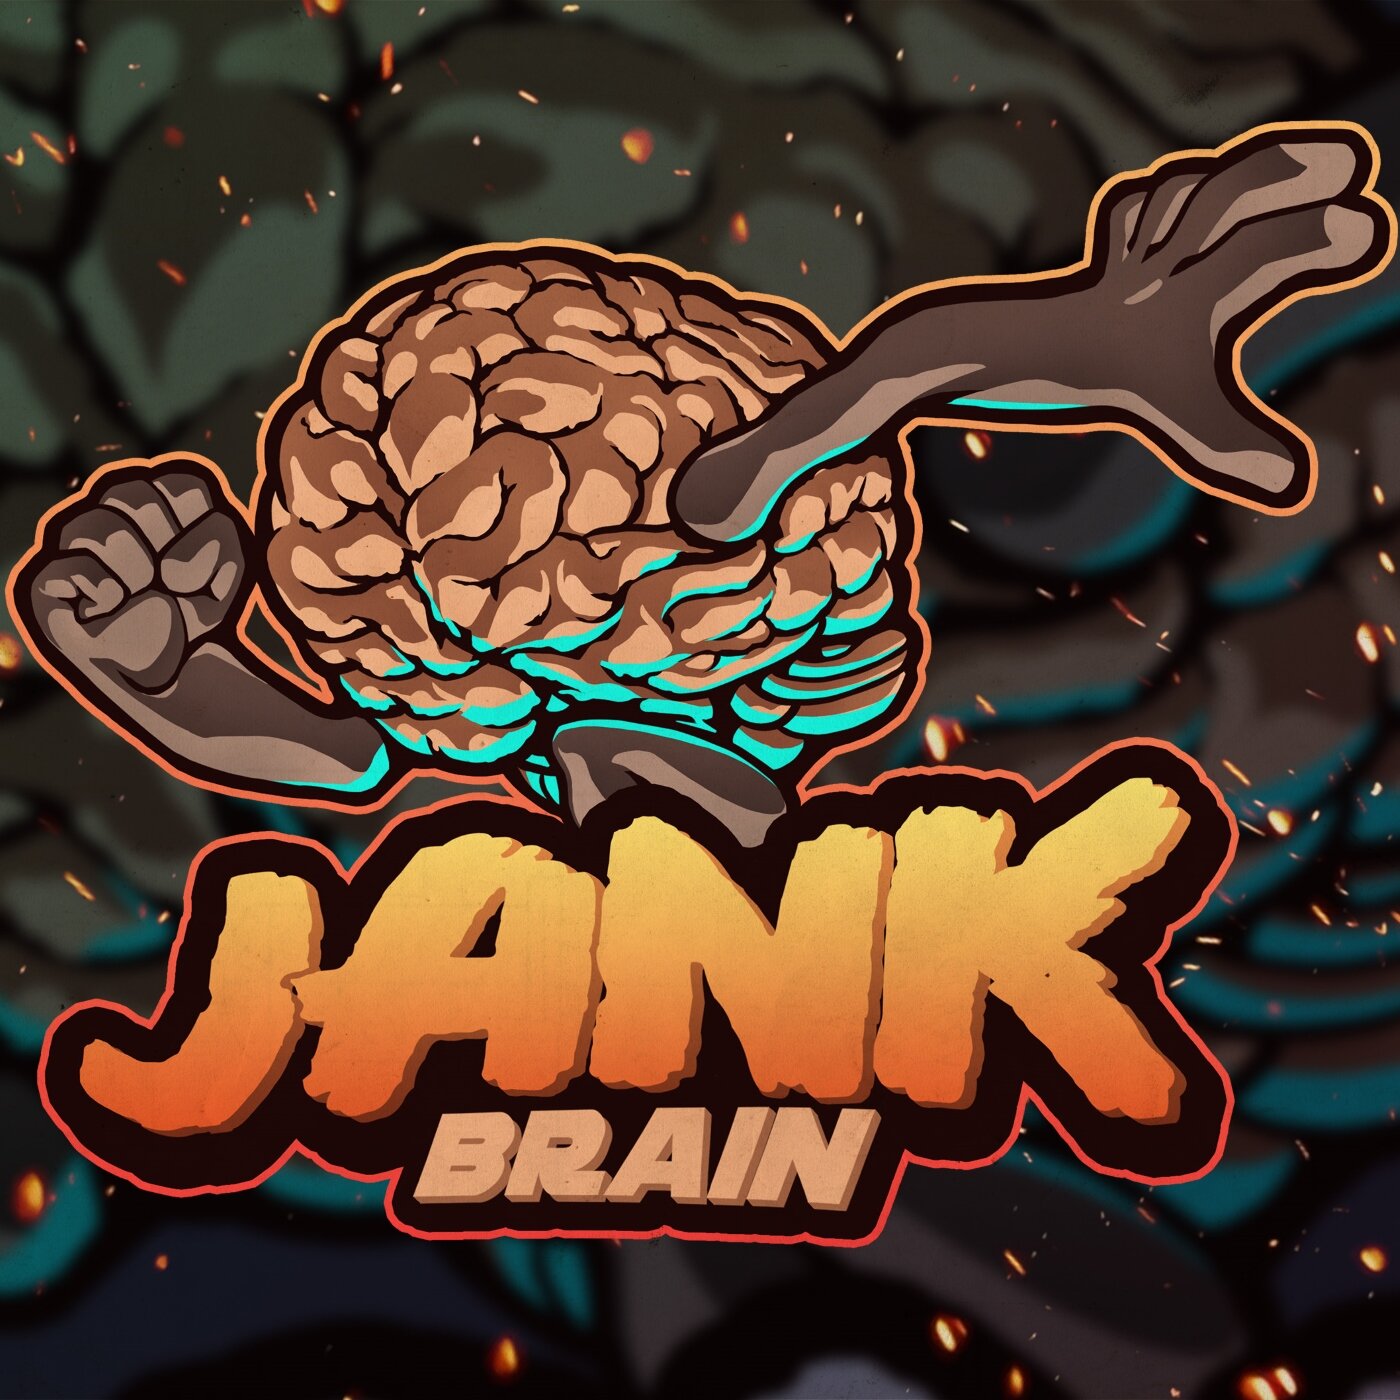 JankBrain (Original Game Soundtrack)